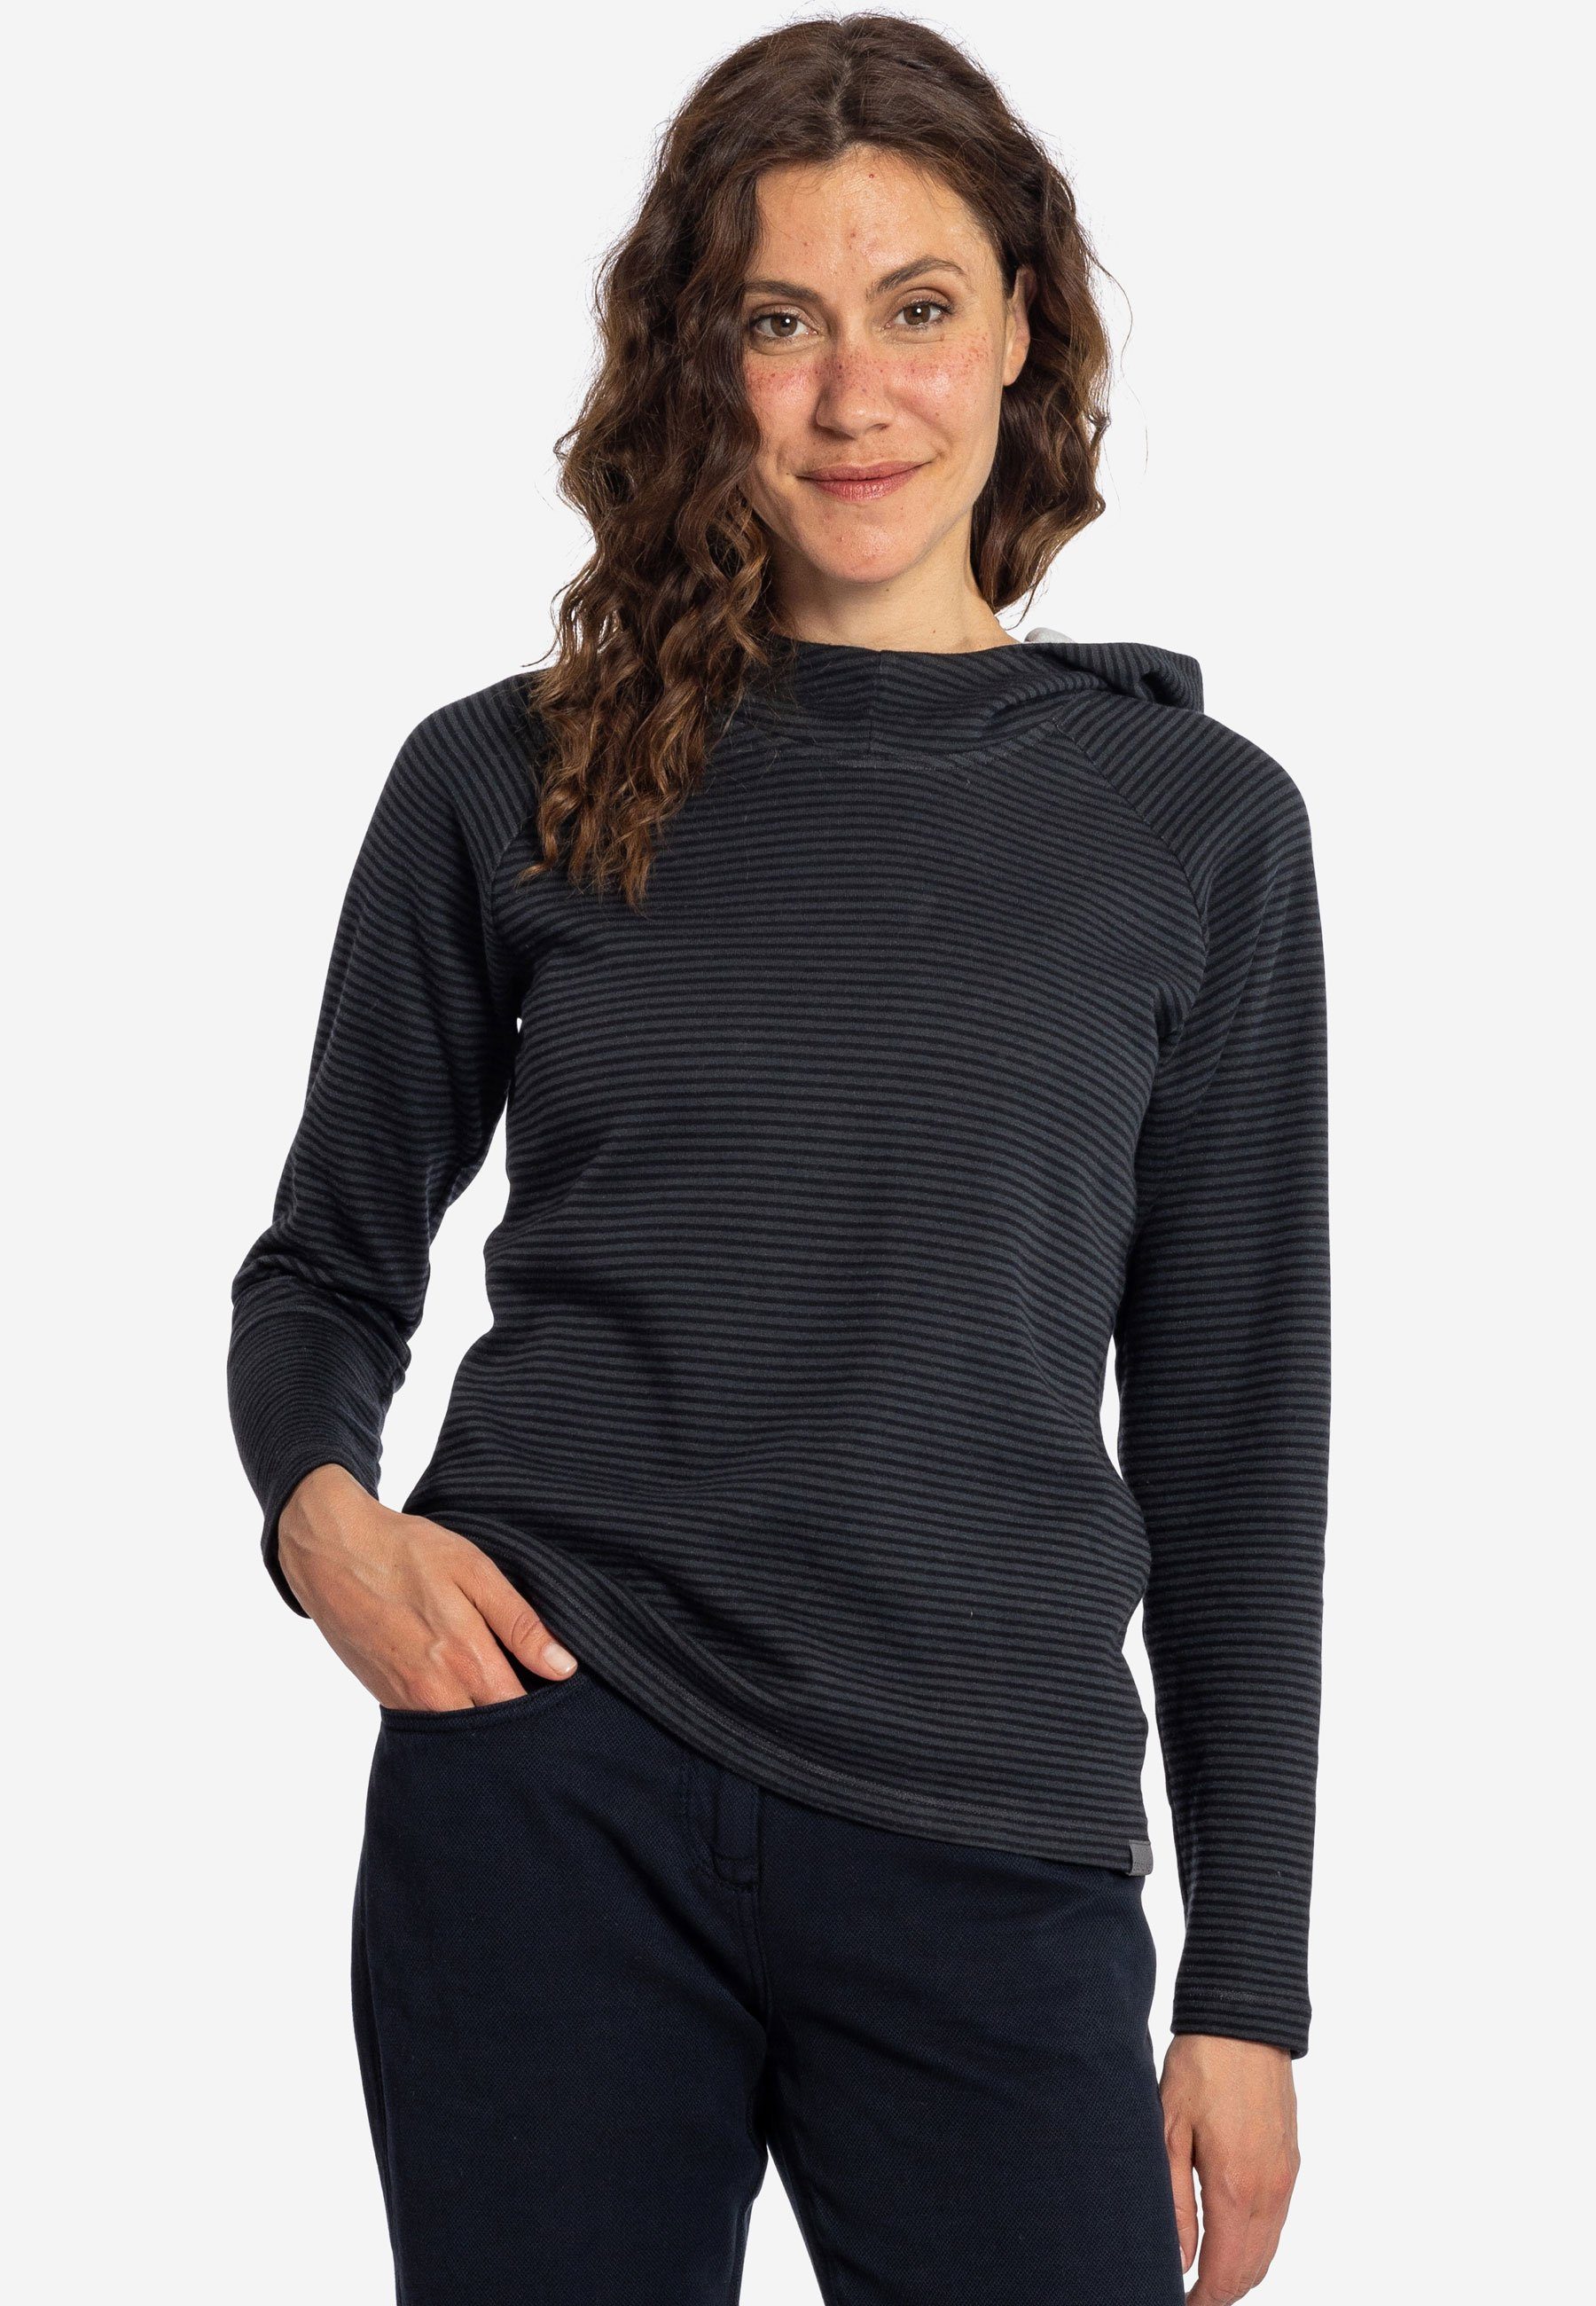 black Wetter anthra - Streifen Kapuzenpullover Sweater Hoodie tailliert leicht Elkline